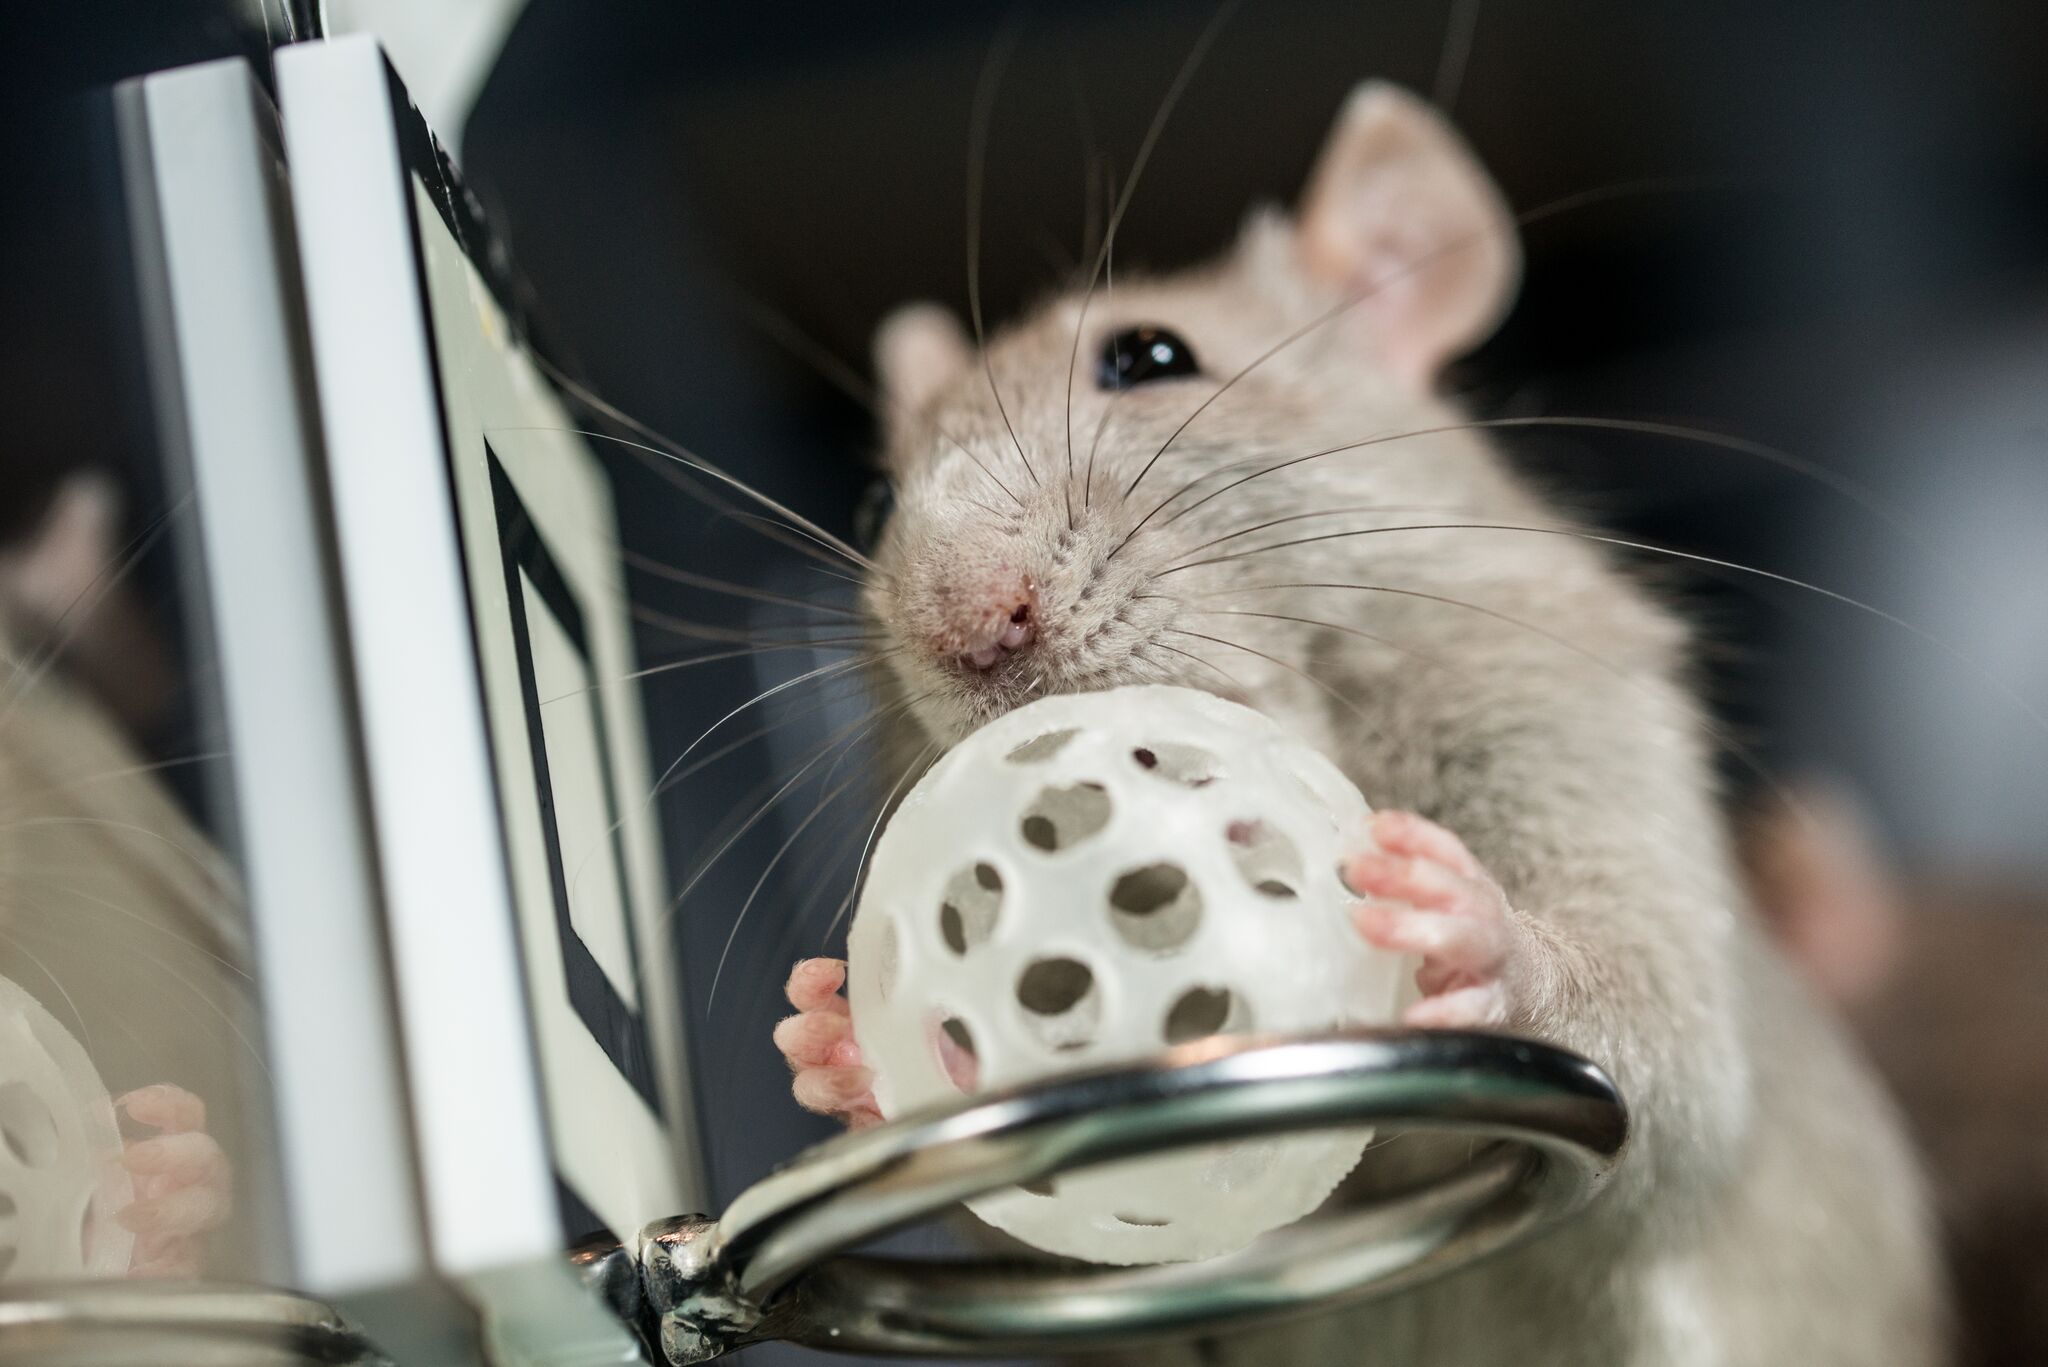 Как дрессировать крысу: дрессировка в домашних условиях для начинающих, как научить командам и трюкам, как воспитывать и тренировать домашнее животное